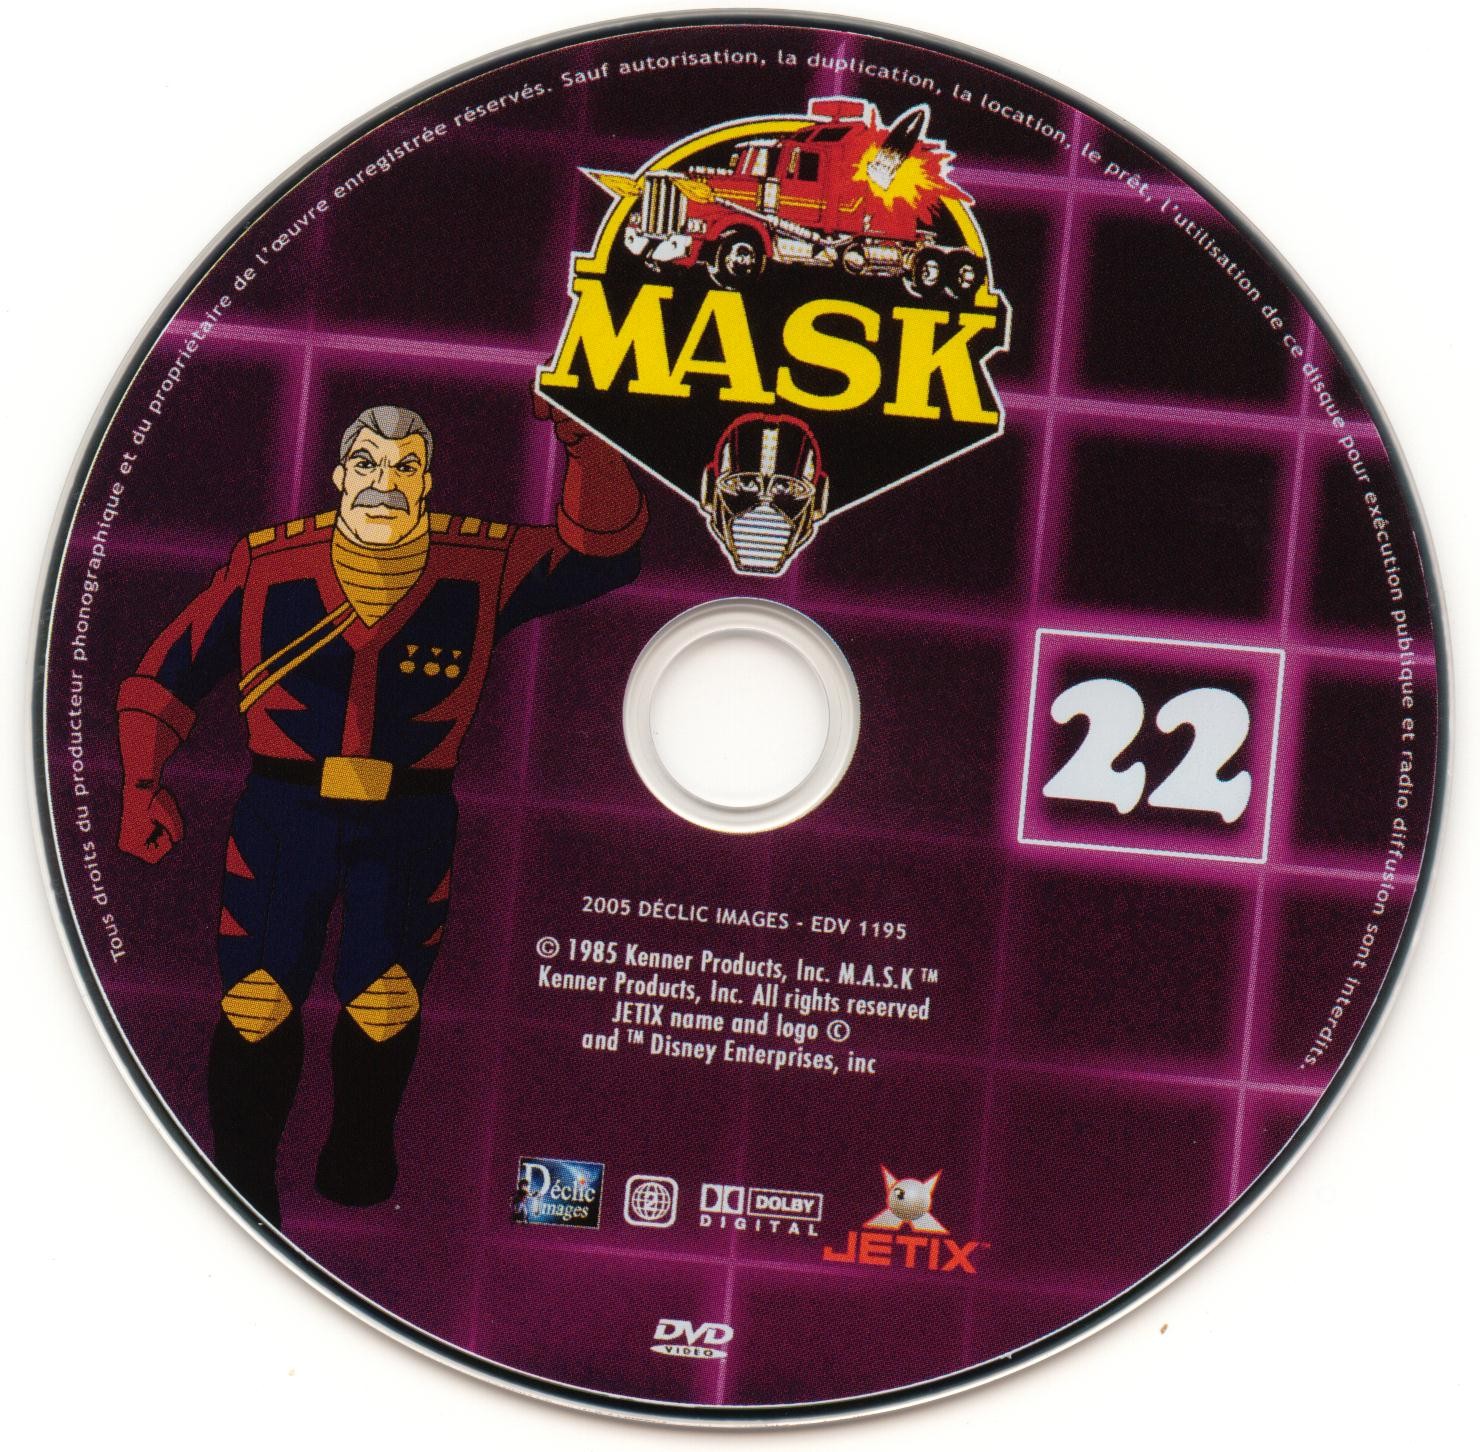 Mask vol 22